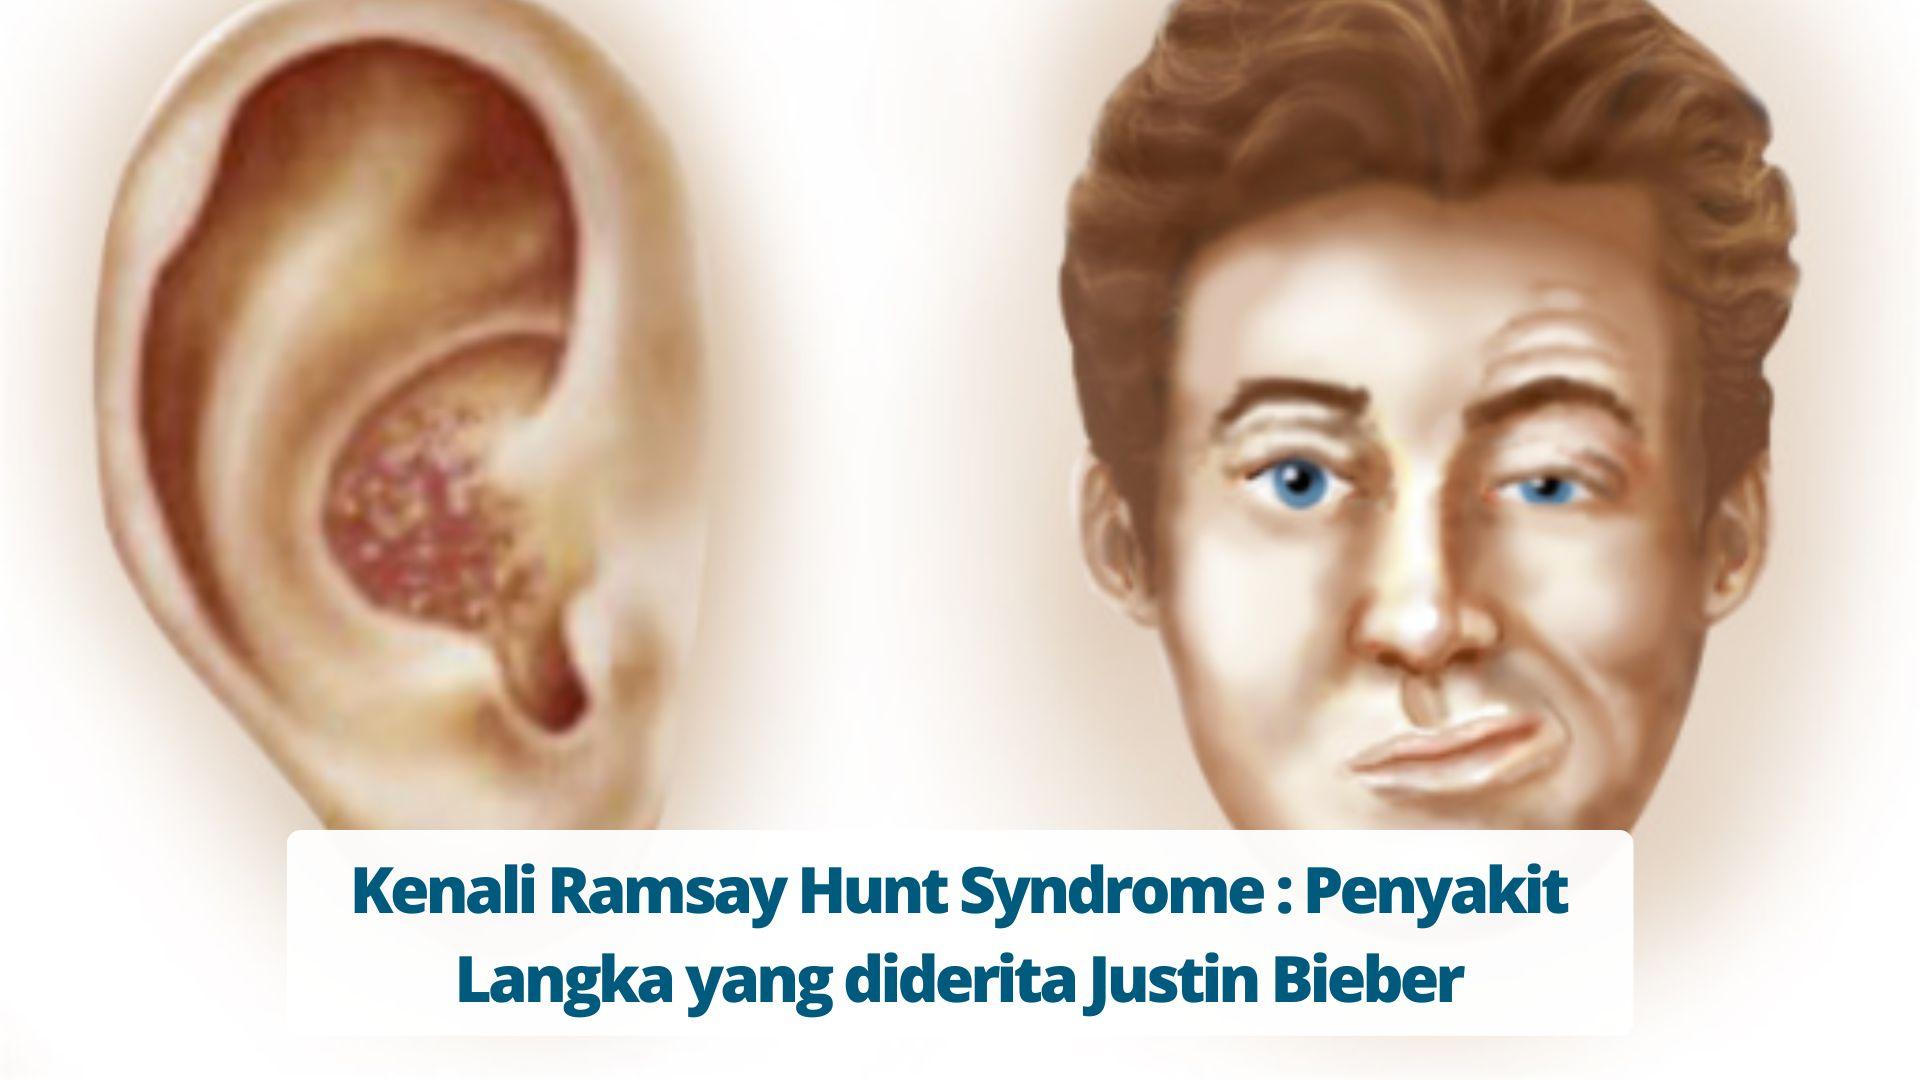 Kenali Ramsay Hunt Syndrome Penyakit Langka yang diderita Justin Bieber